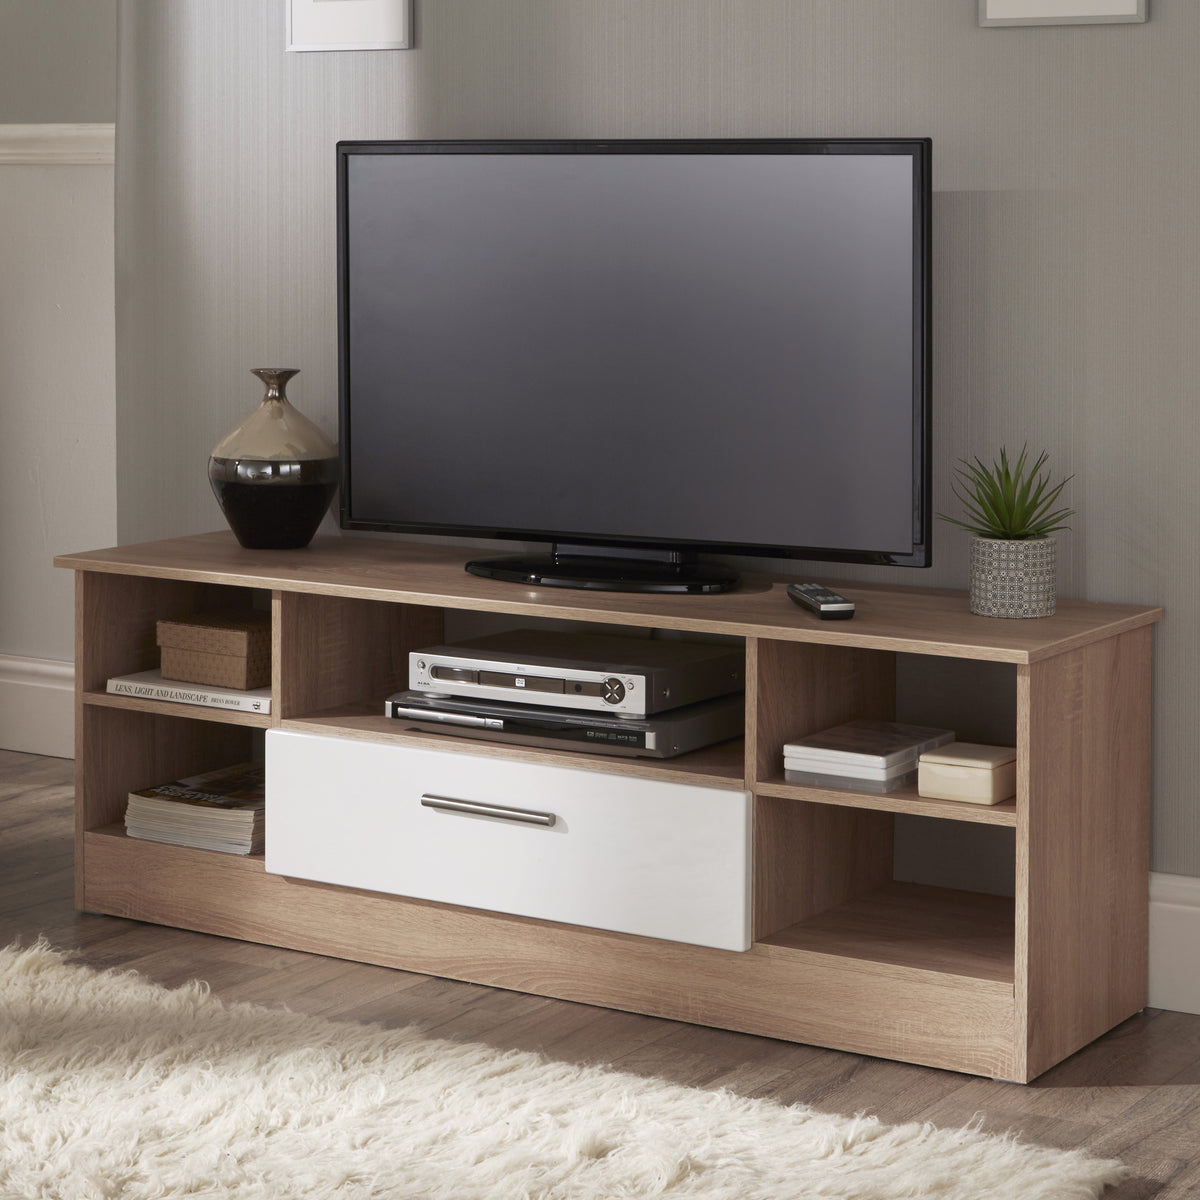 Blakely White & Light Oak Wide 1 Drawer TV Unit for living room